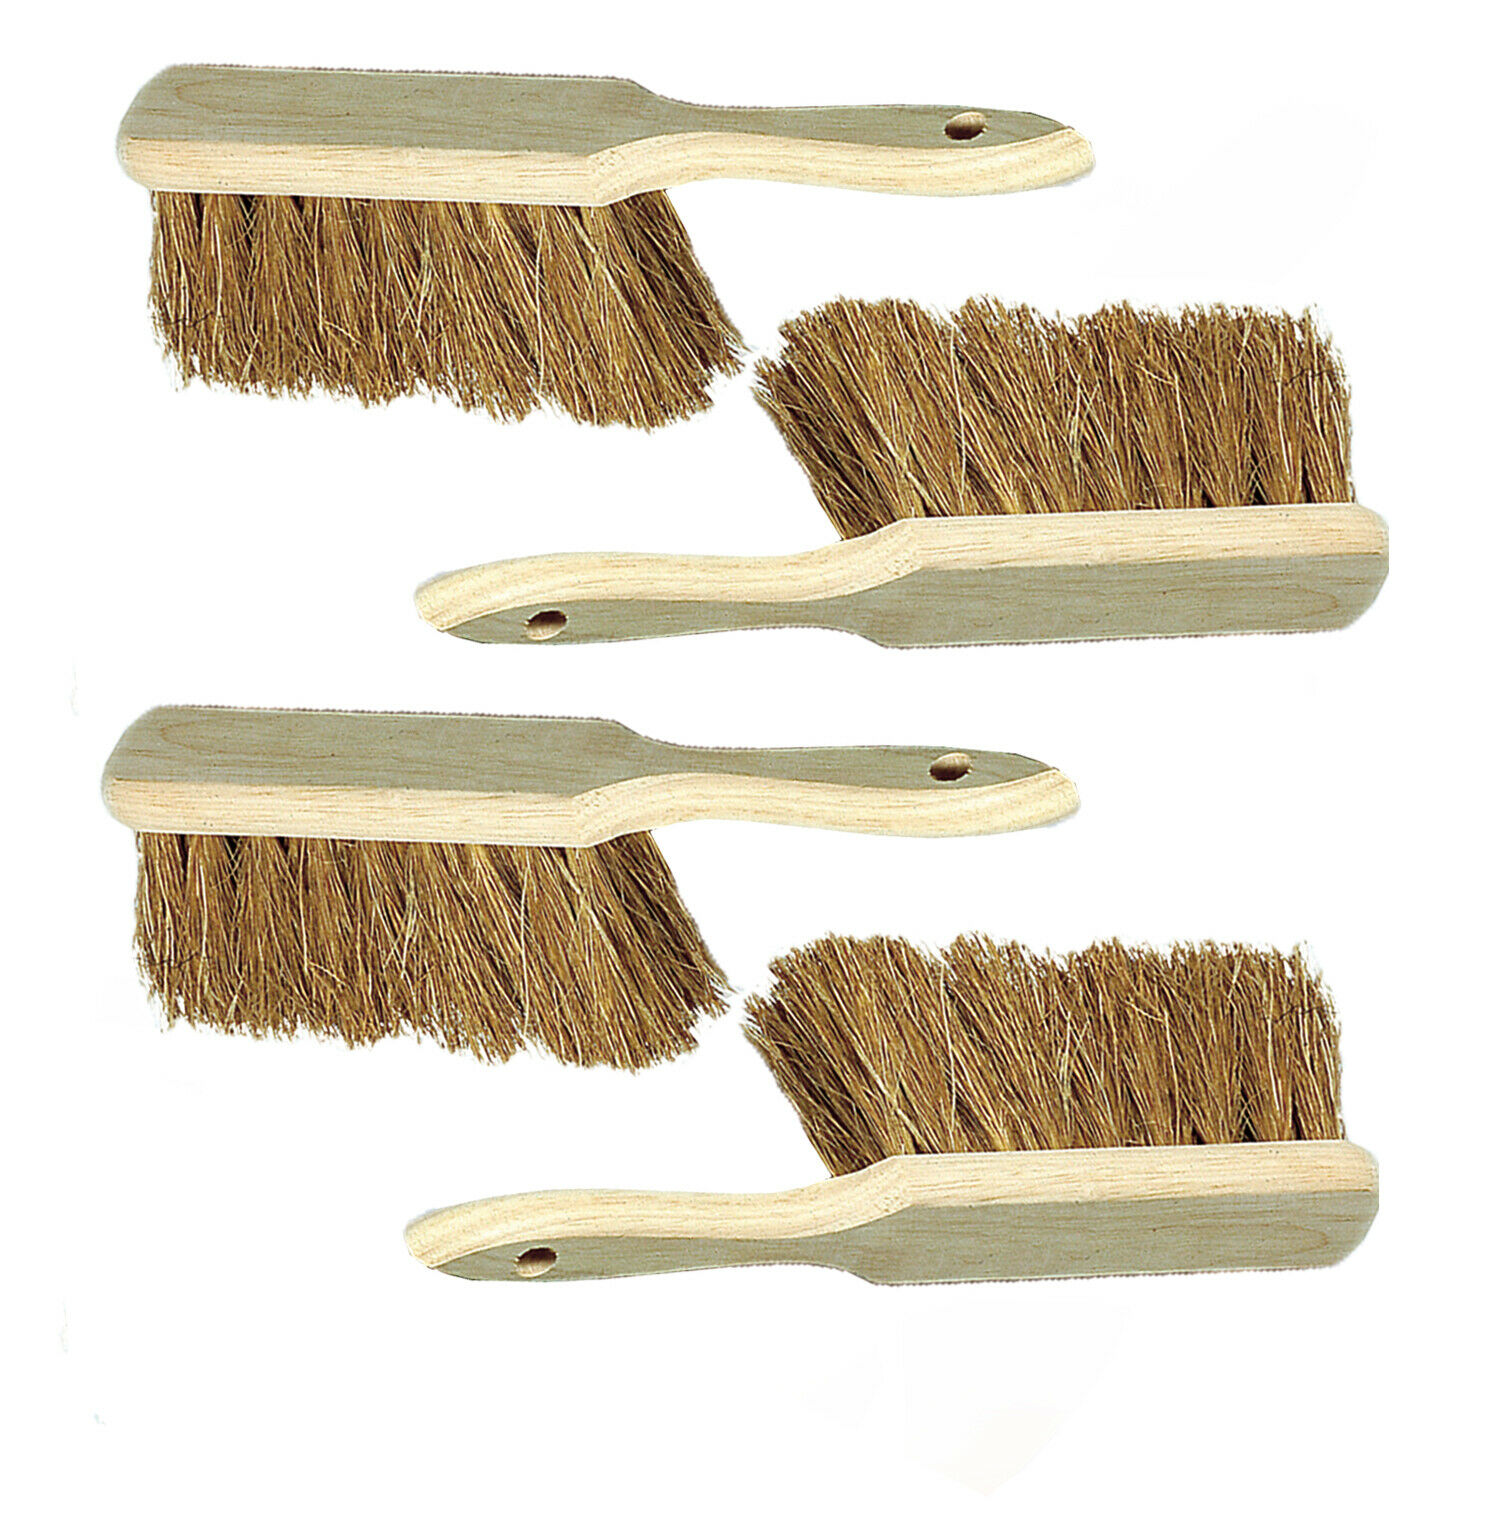 Hand Brush Wooden Kokosborsten, Natural 11in Broom Industriehandfeger 4 Piece